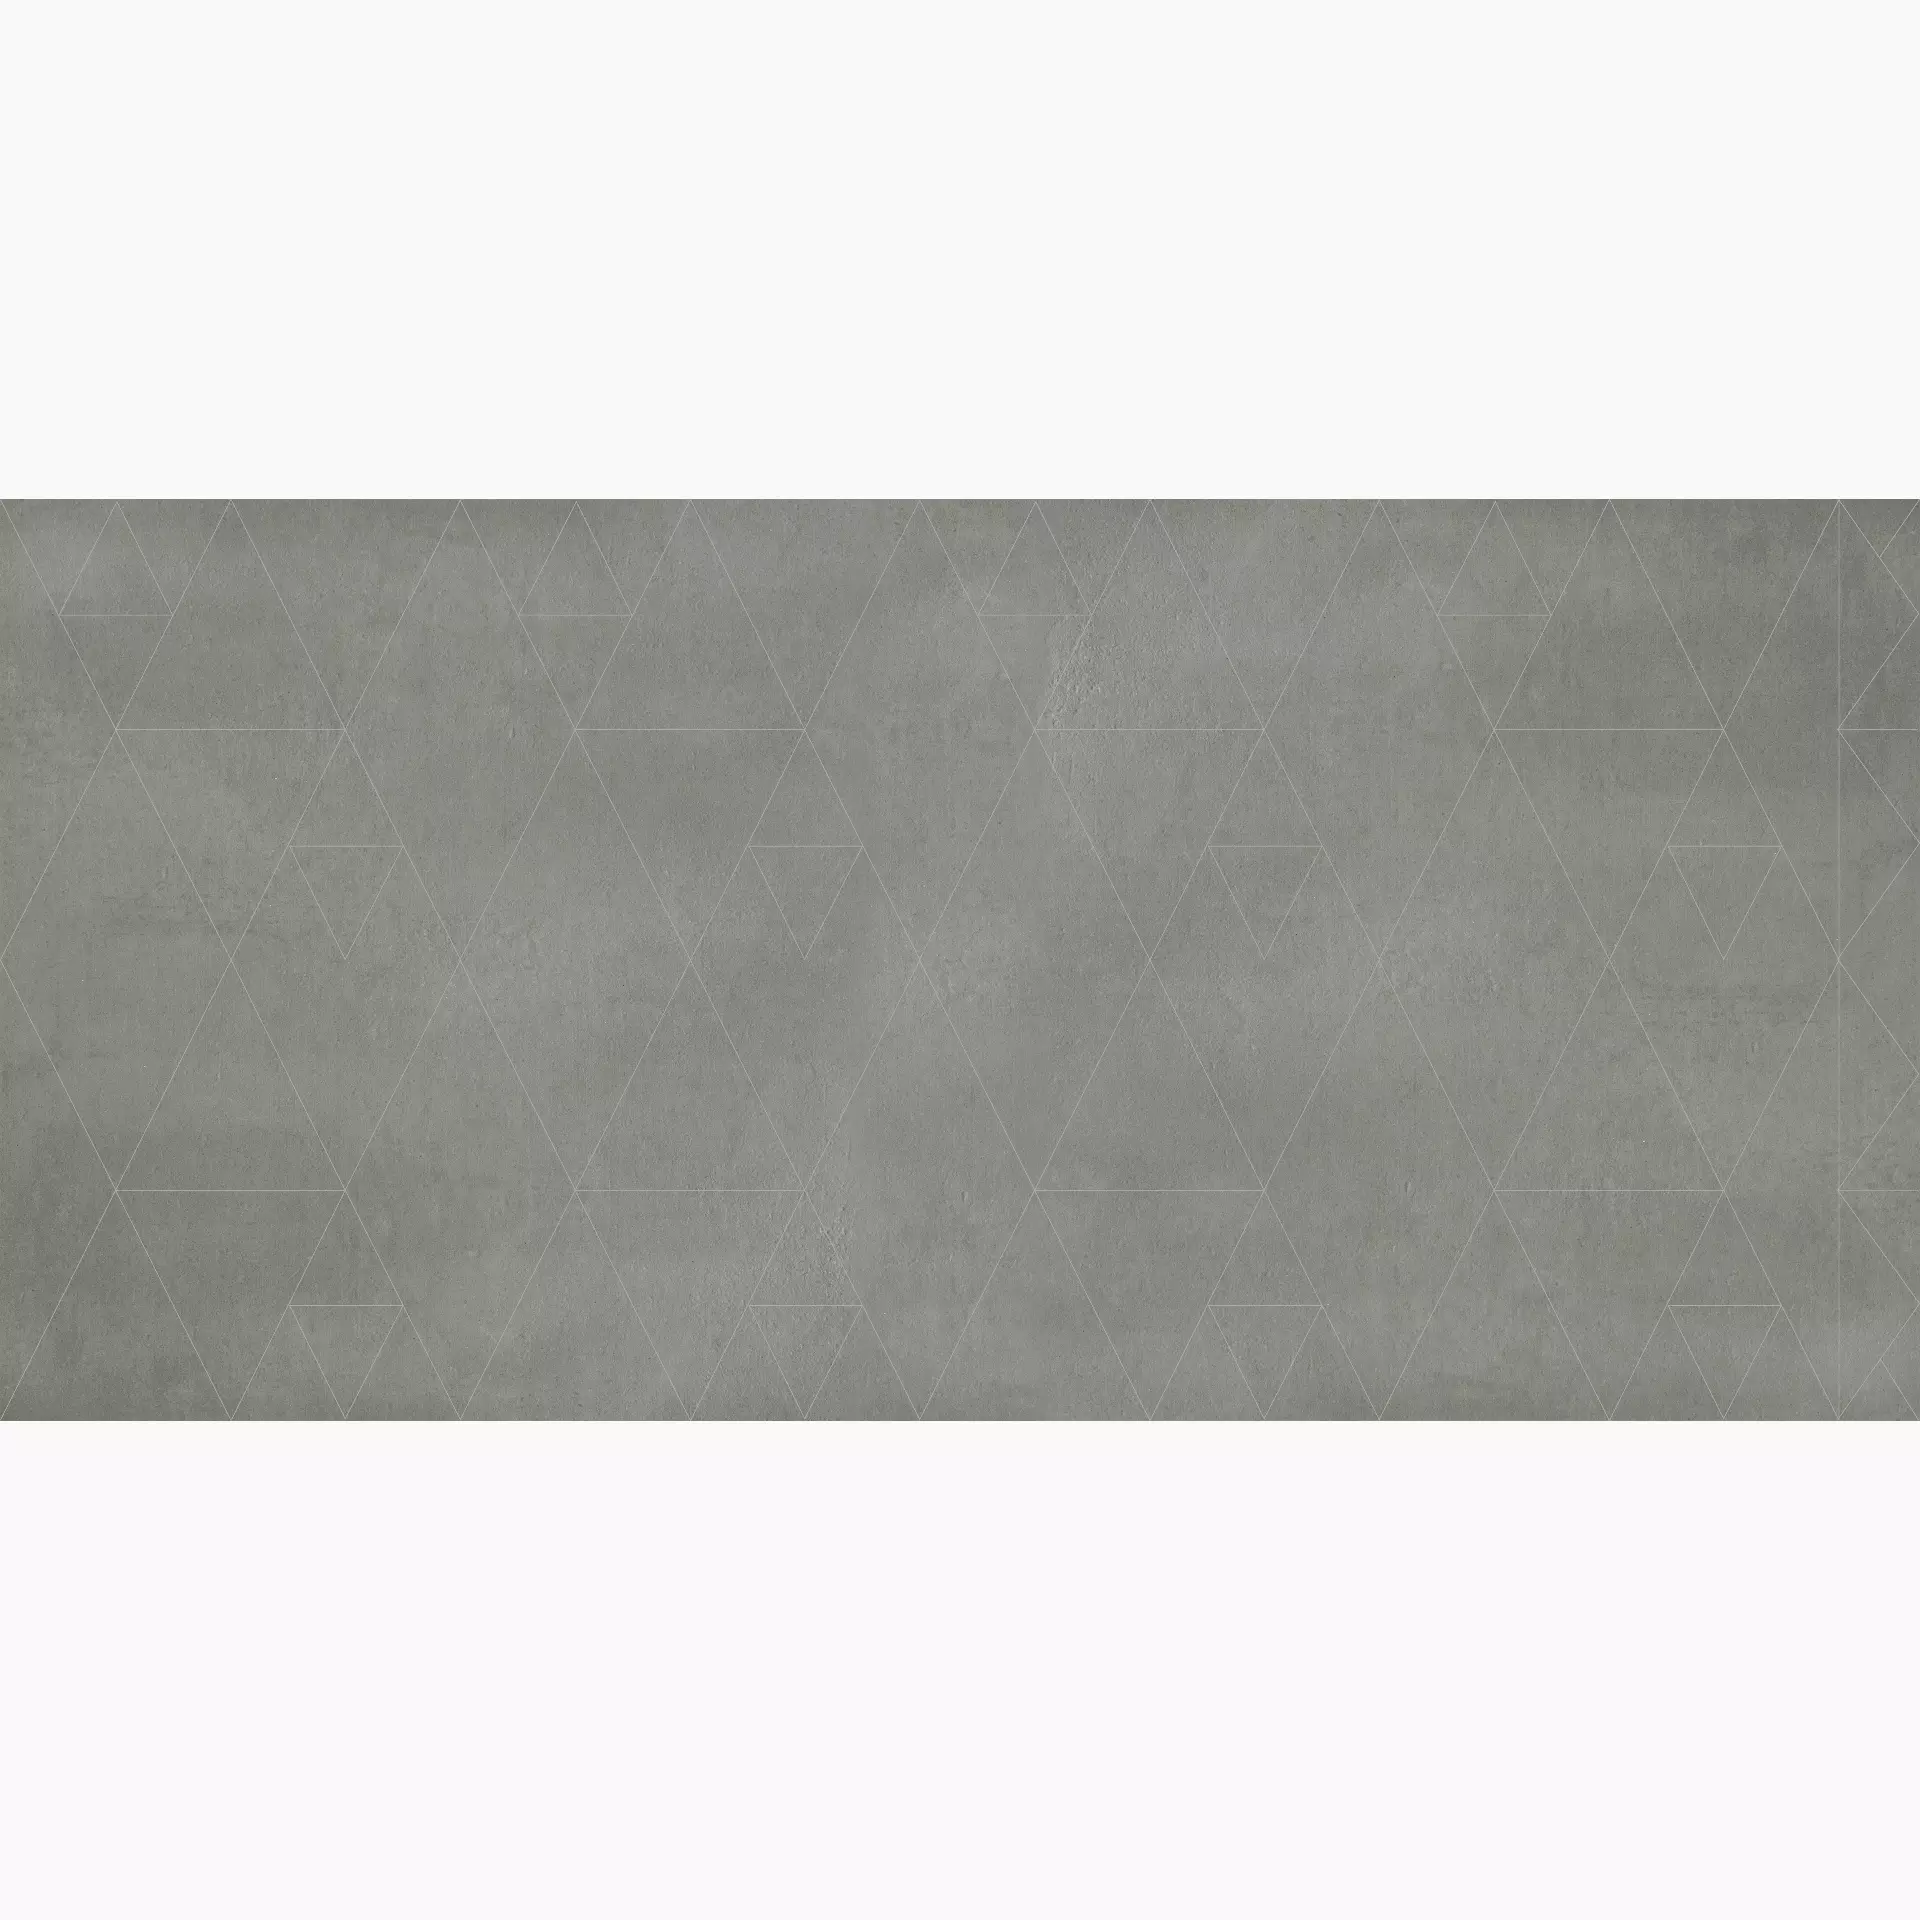 Gigacer Concrete Signs Grey Matt Decor Essential 6CONCR250GREESS 120x250cm 6mm